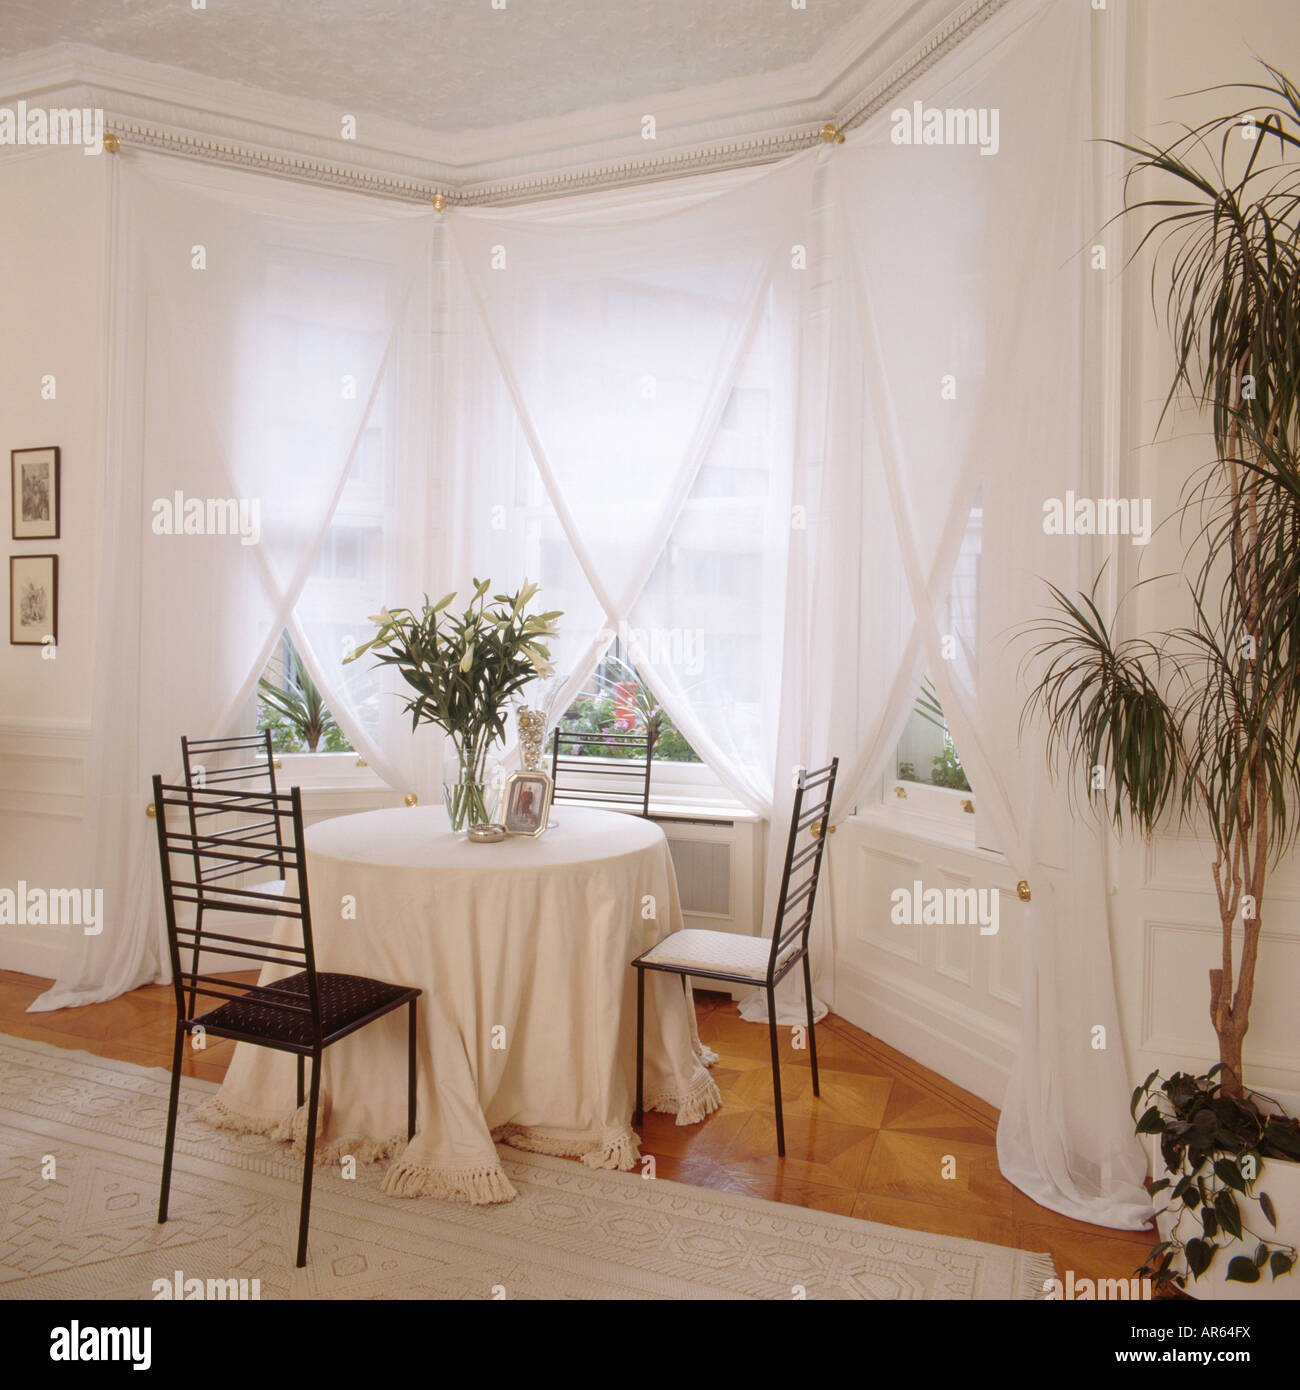 Tovaglia bianca e nera sedie in metallo nella parte anteriore della finestra con bianco tende di voile bianco in sala da pranzo con Dracaena Foto Stock